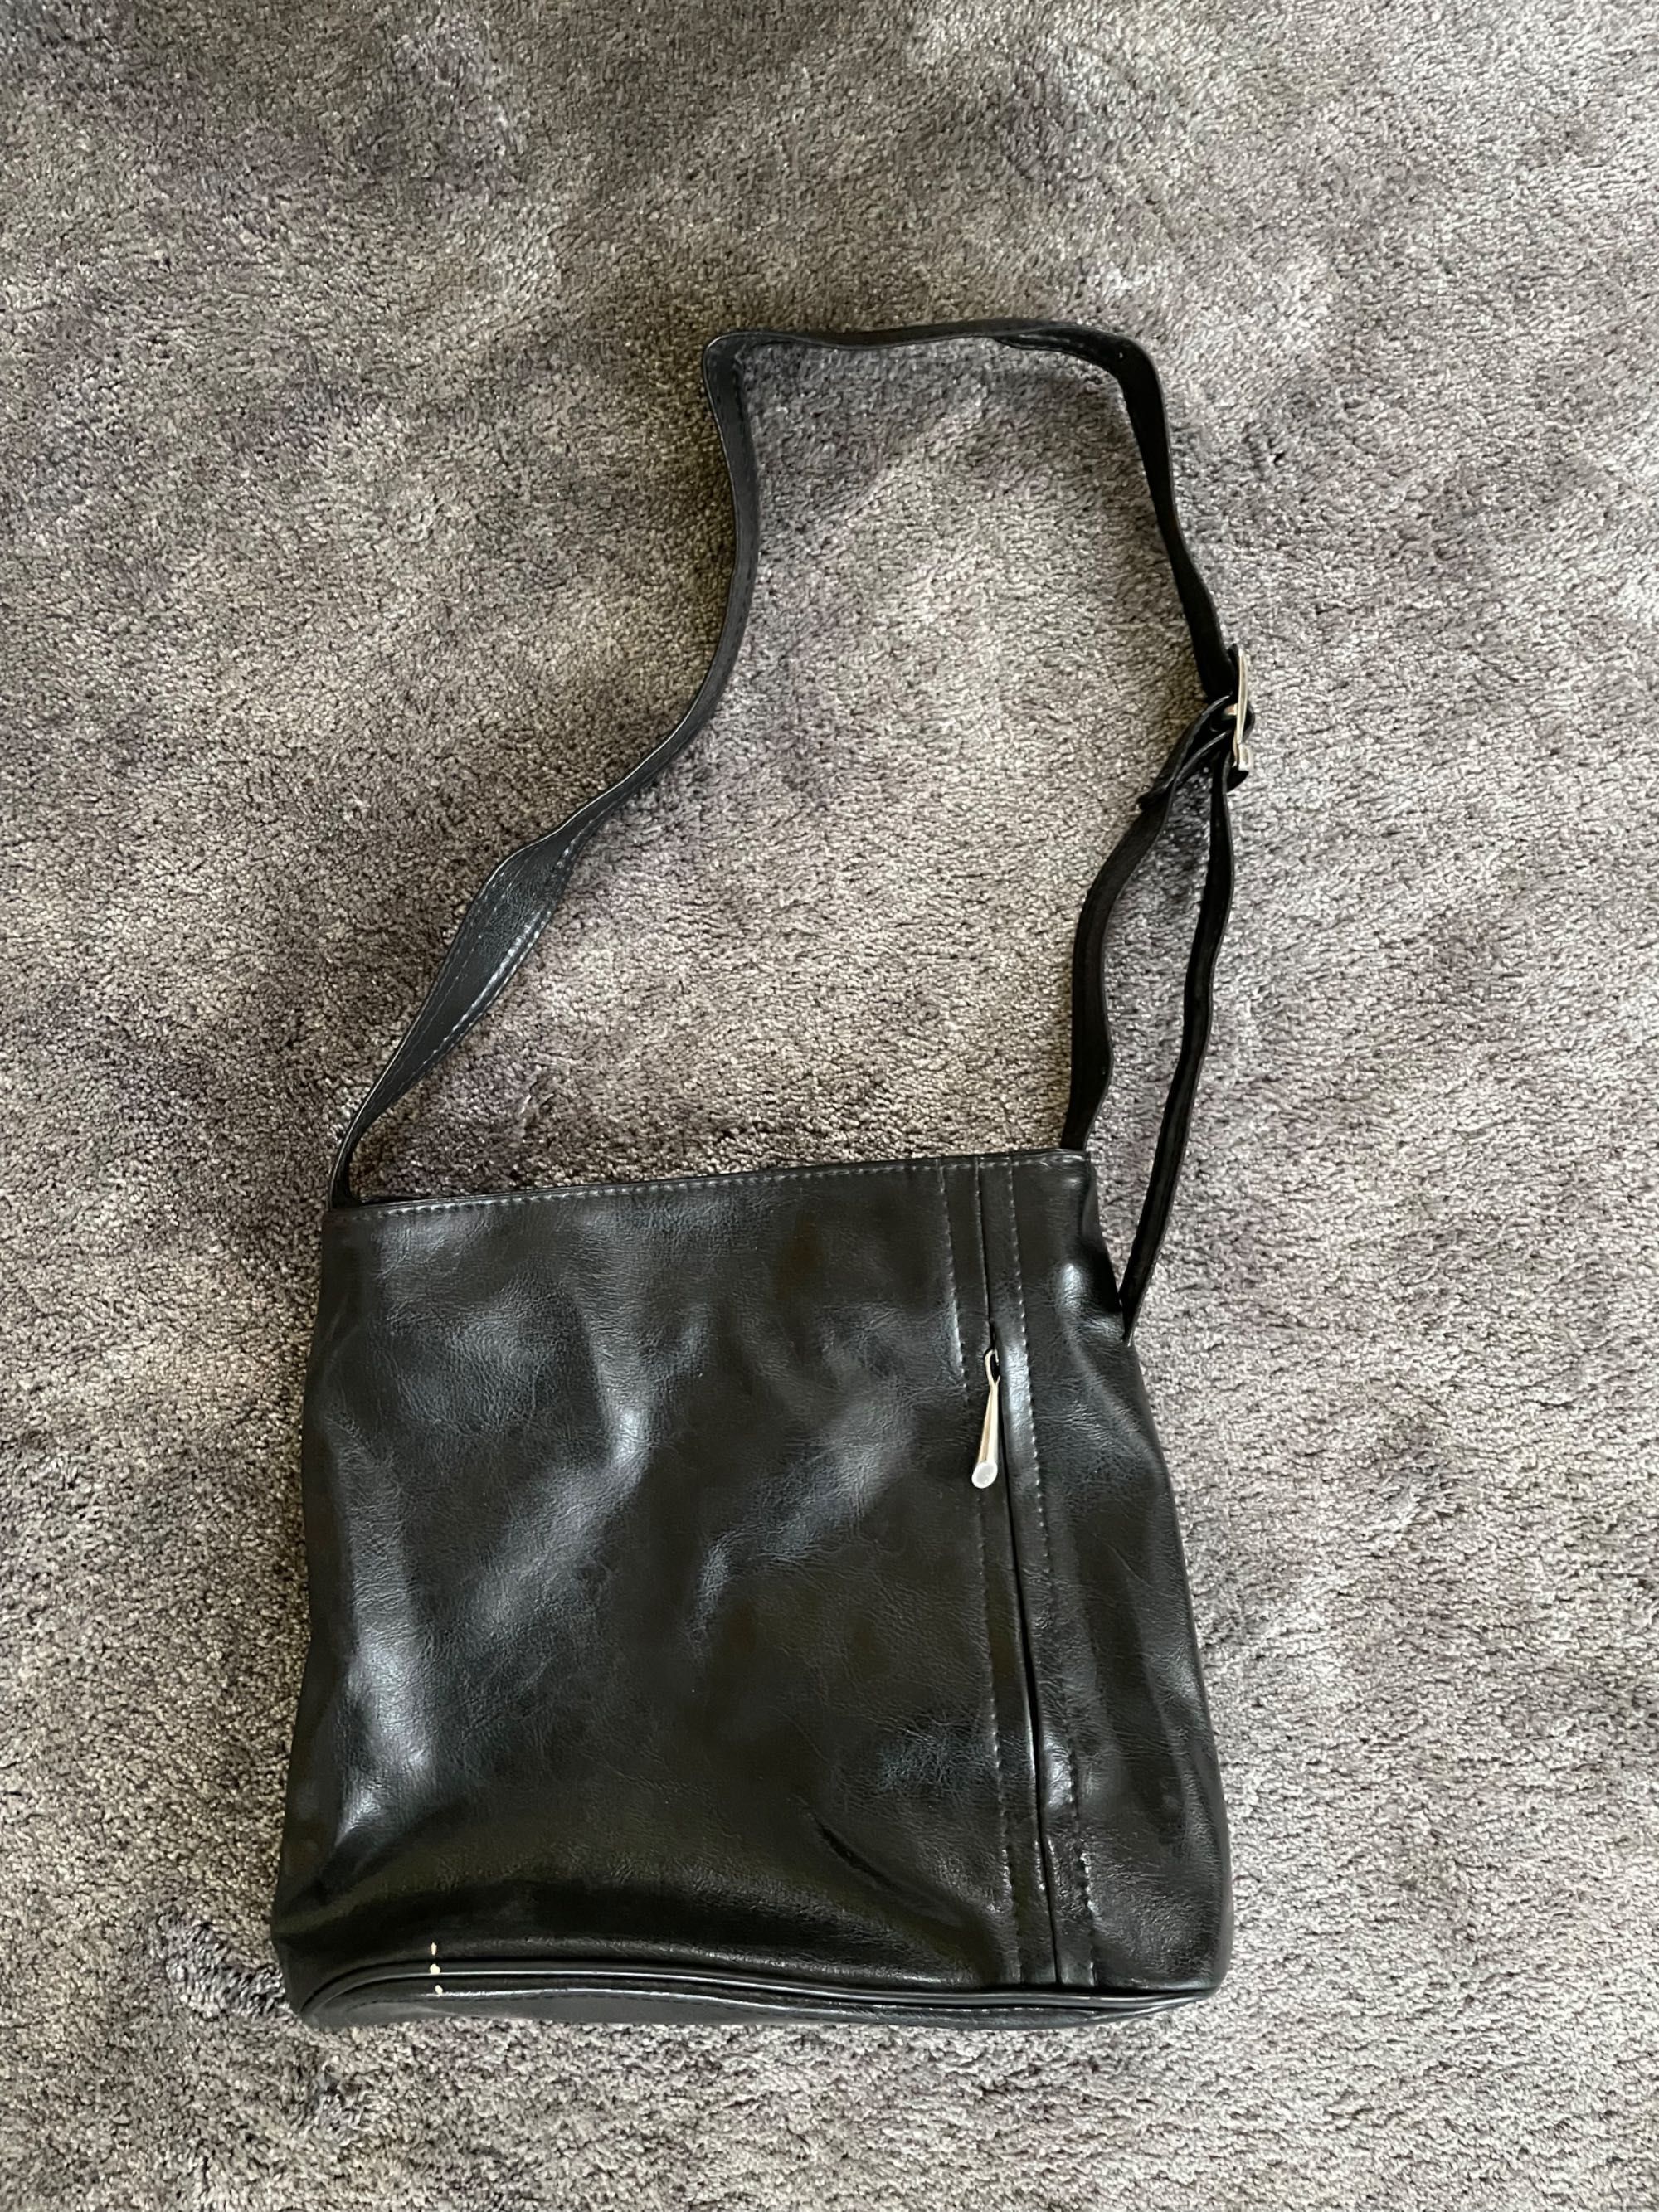 torba torebka saszetka blyszczaca czarna na ramie stylowa